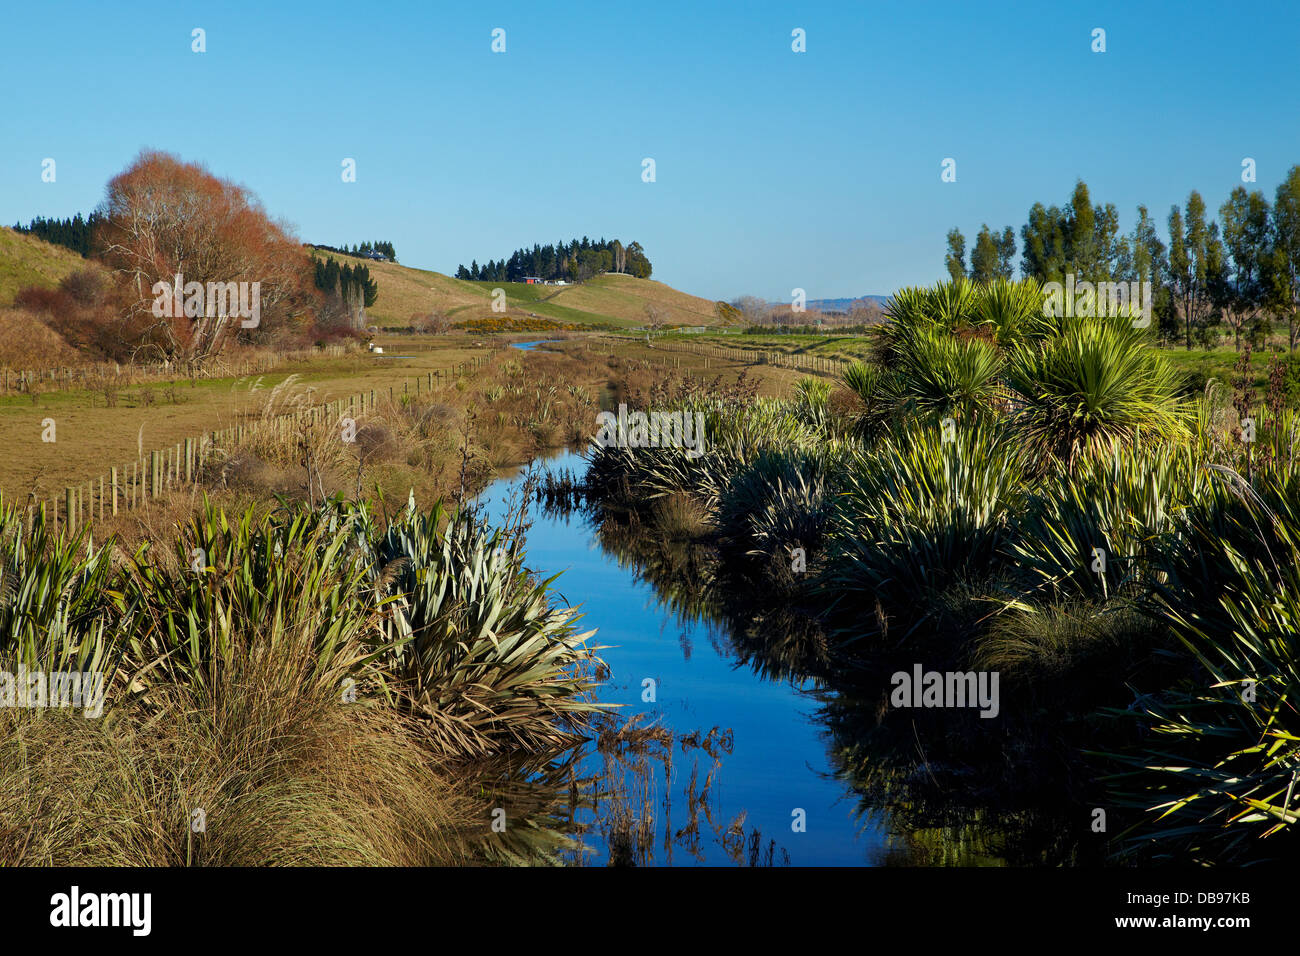 Canal de drainage et planté de riverains, des plaines, près de Dunedin Taieri, île du Sud, Nouvelle-Zélande Banque D'Images